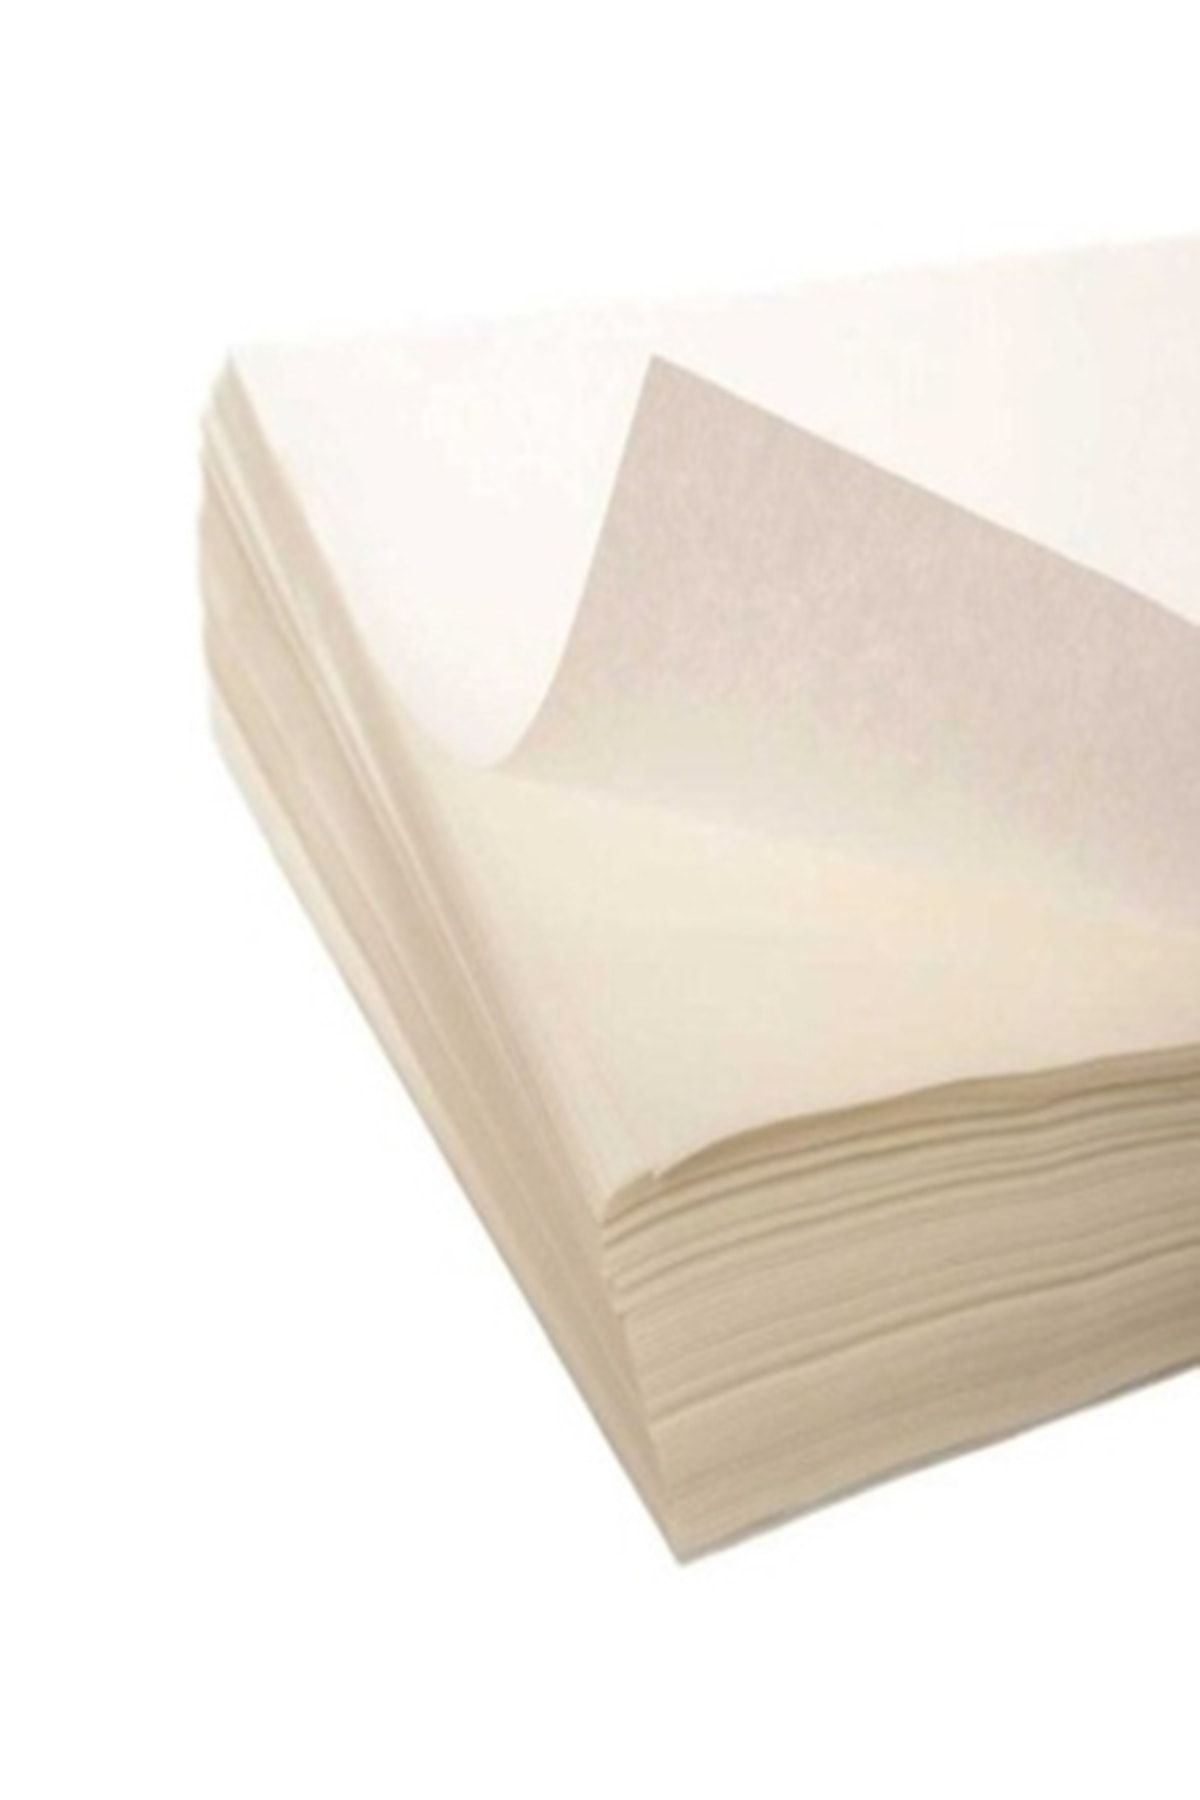 Babur Kitap Teksir Saman Kağıt 53 Gr. Yak. A5 Boyutunda (20 X 15 Cm.)(kitap Kağıdı) 500 Yap